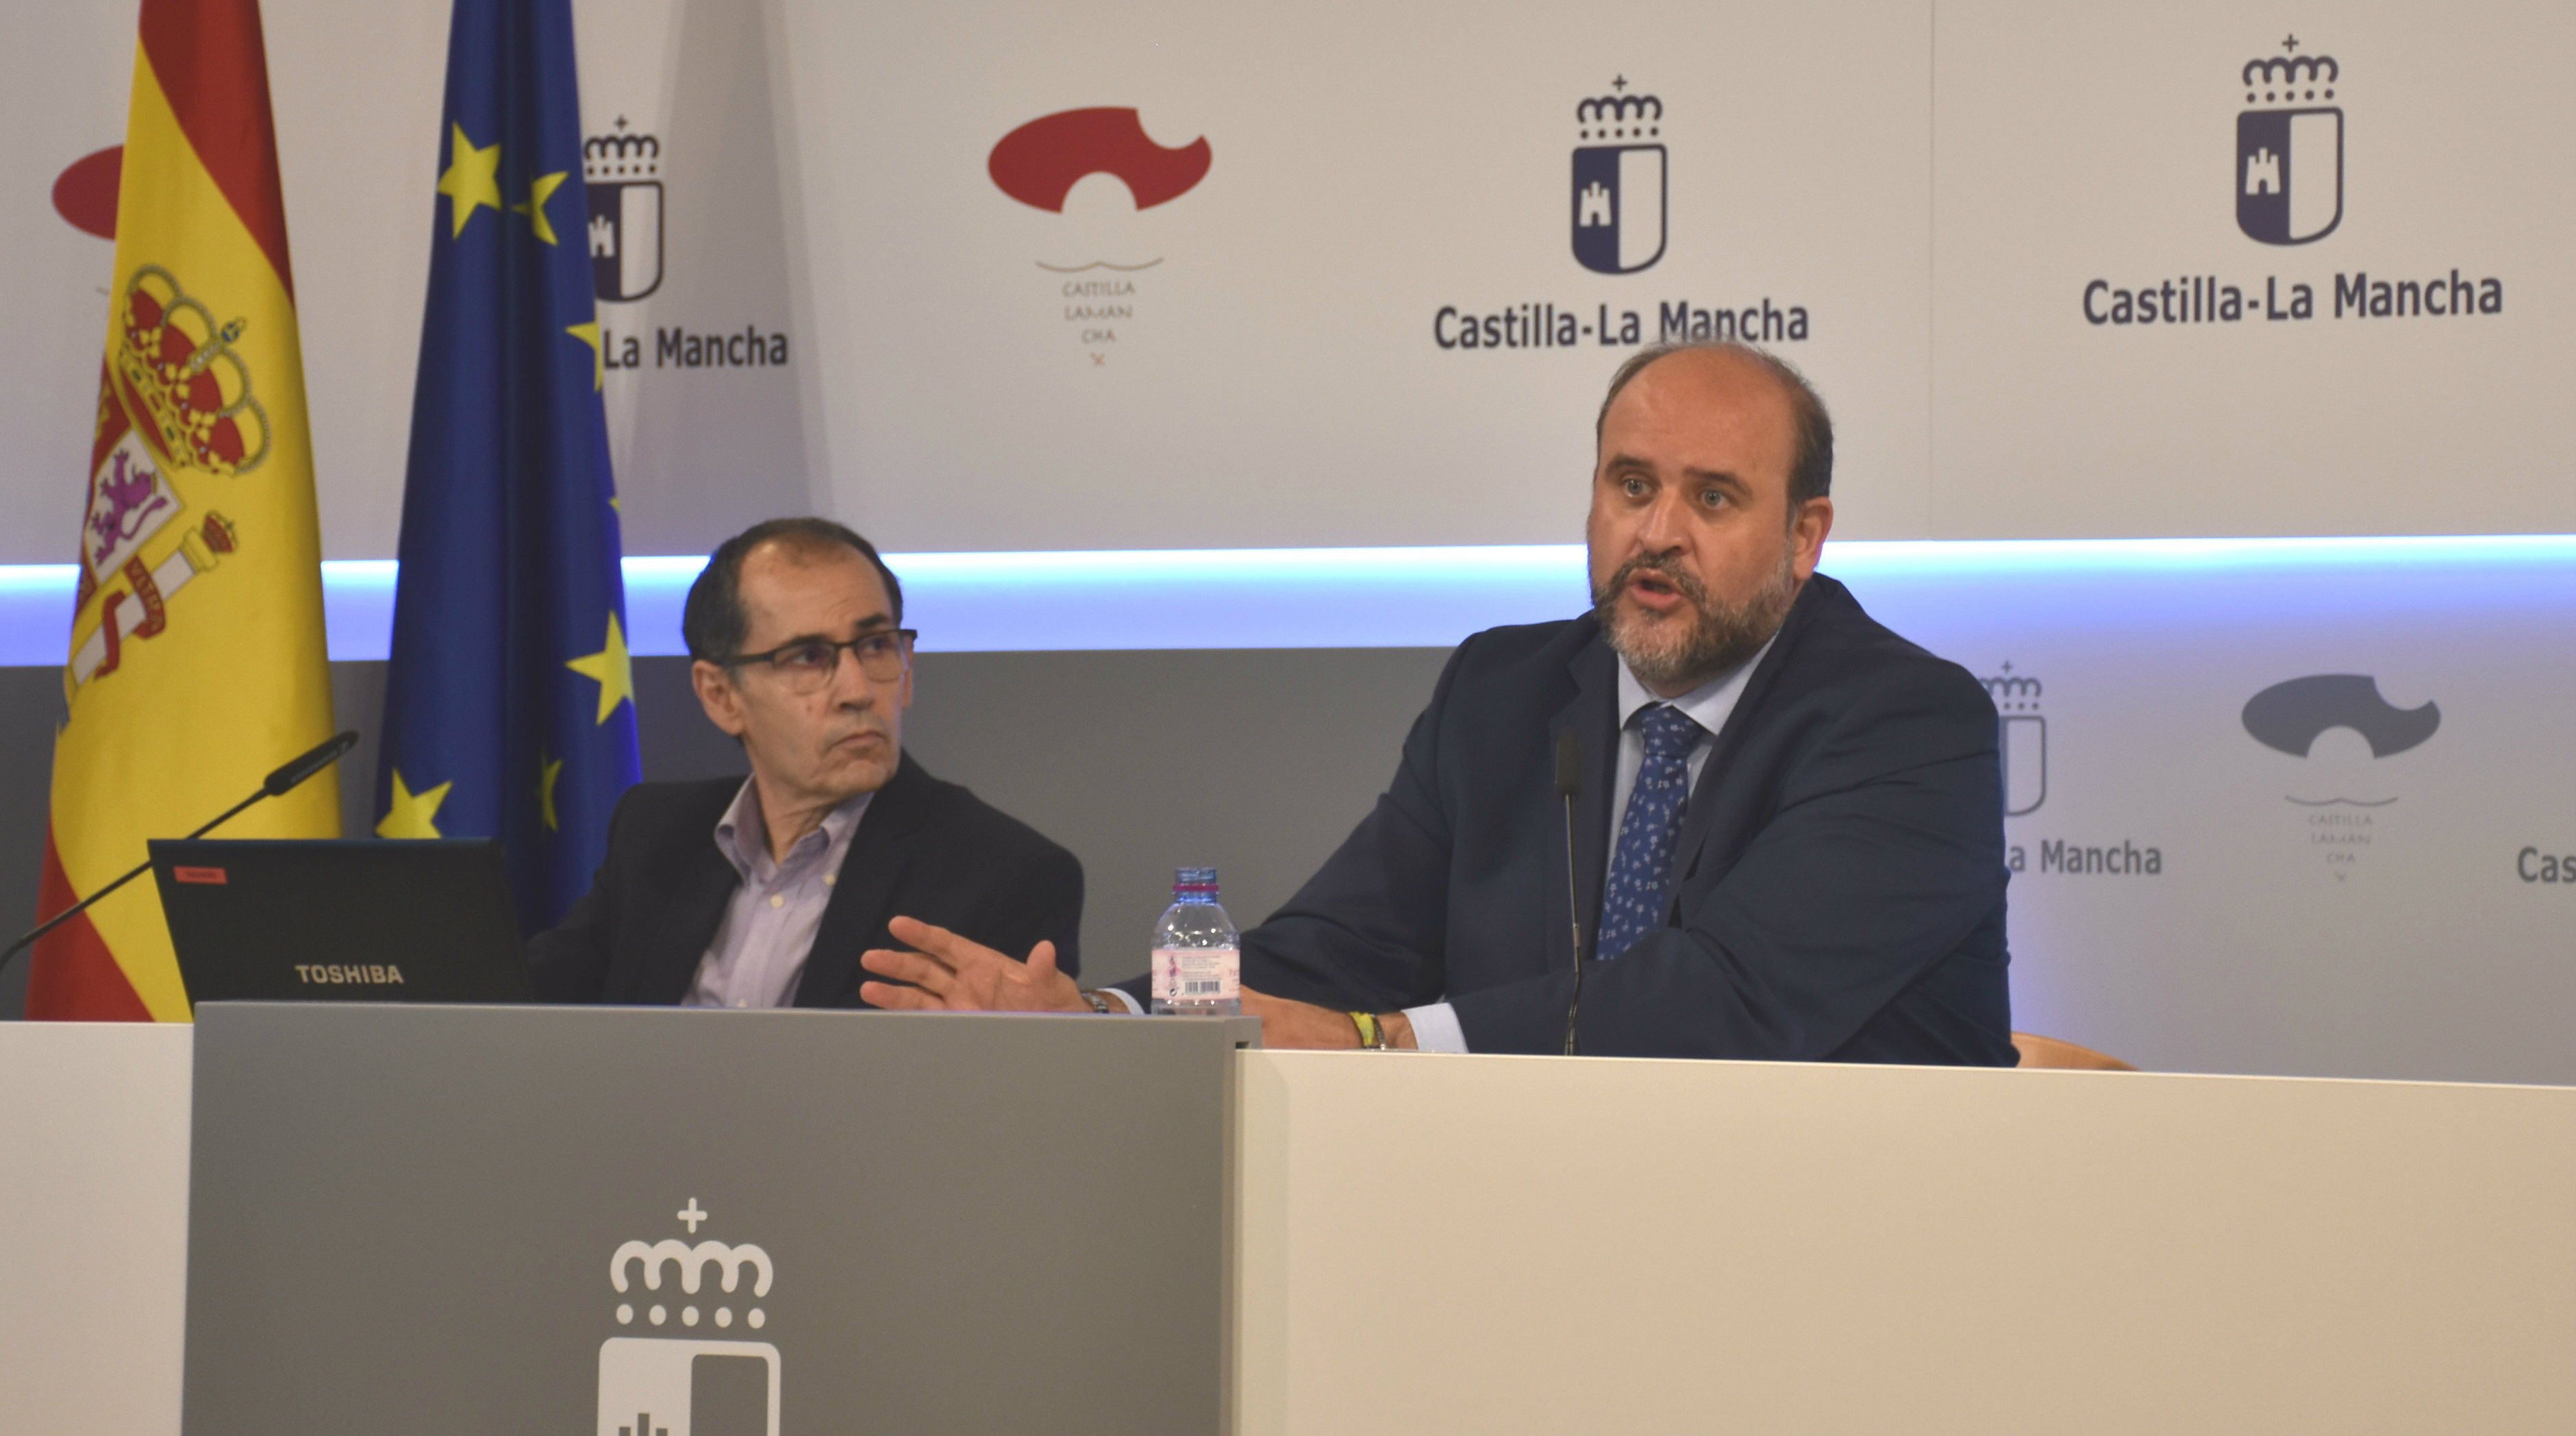 El vicepresidente de Castilla-La Mancha, José Luis Martínez Guijarro. Presupuestos, portal de transparencia